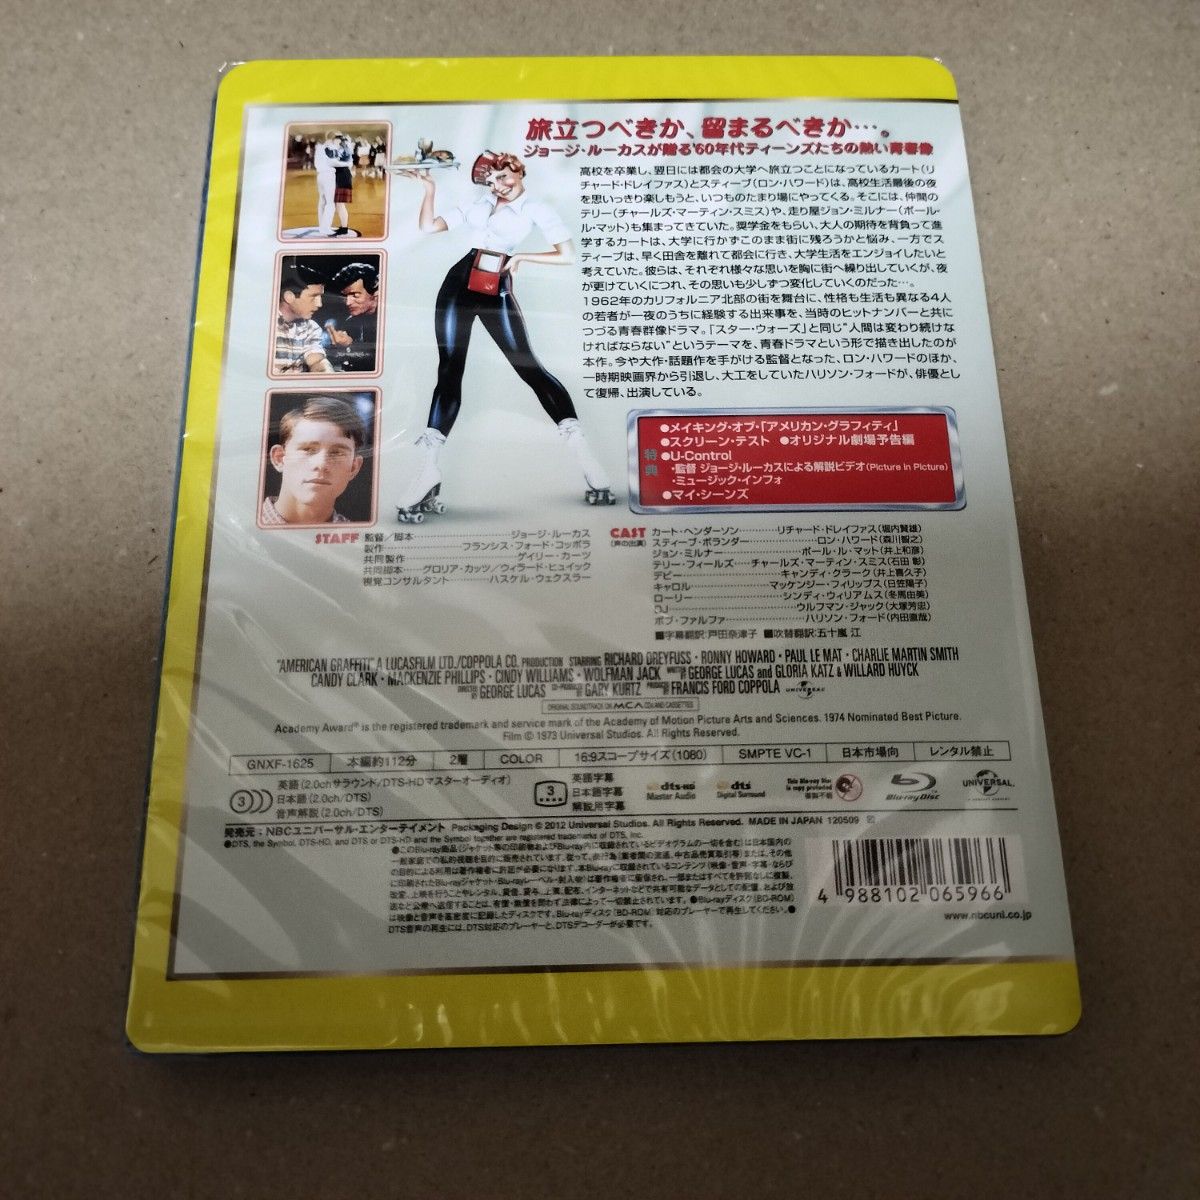 アメリカングラフィティ Blu-ray ブルーレイ 2部作セット セル版 新品 未開封 送料無料 匿名配送